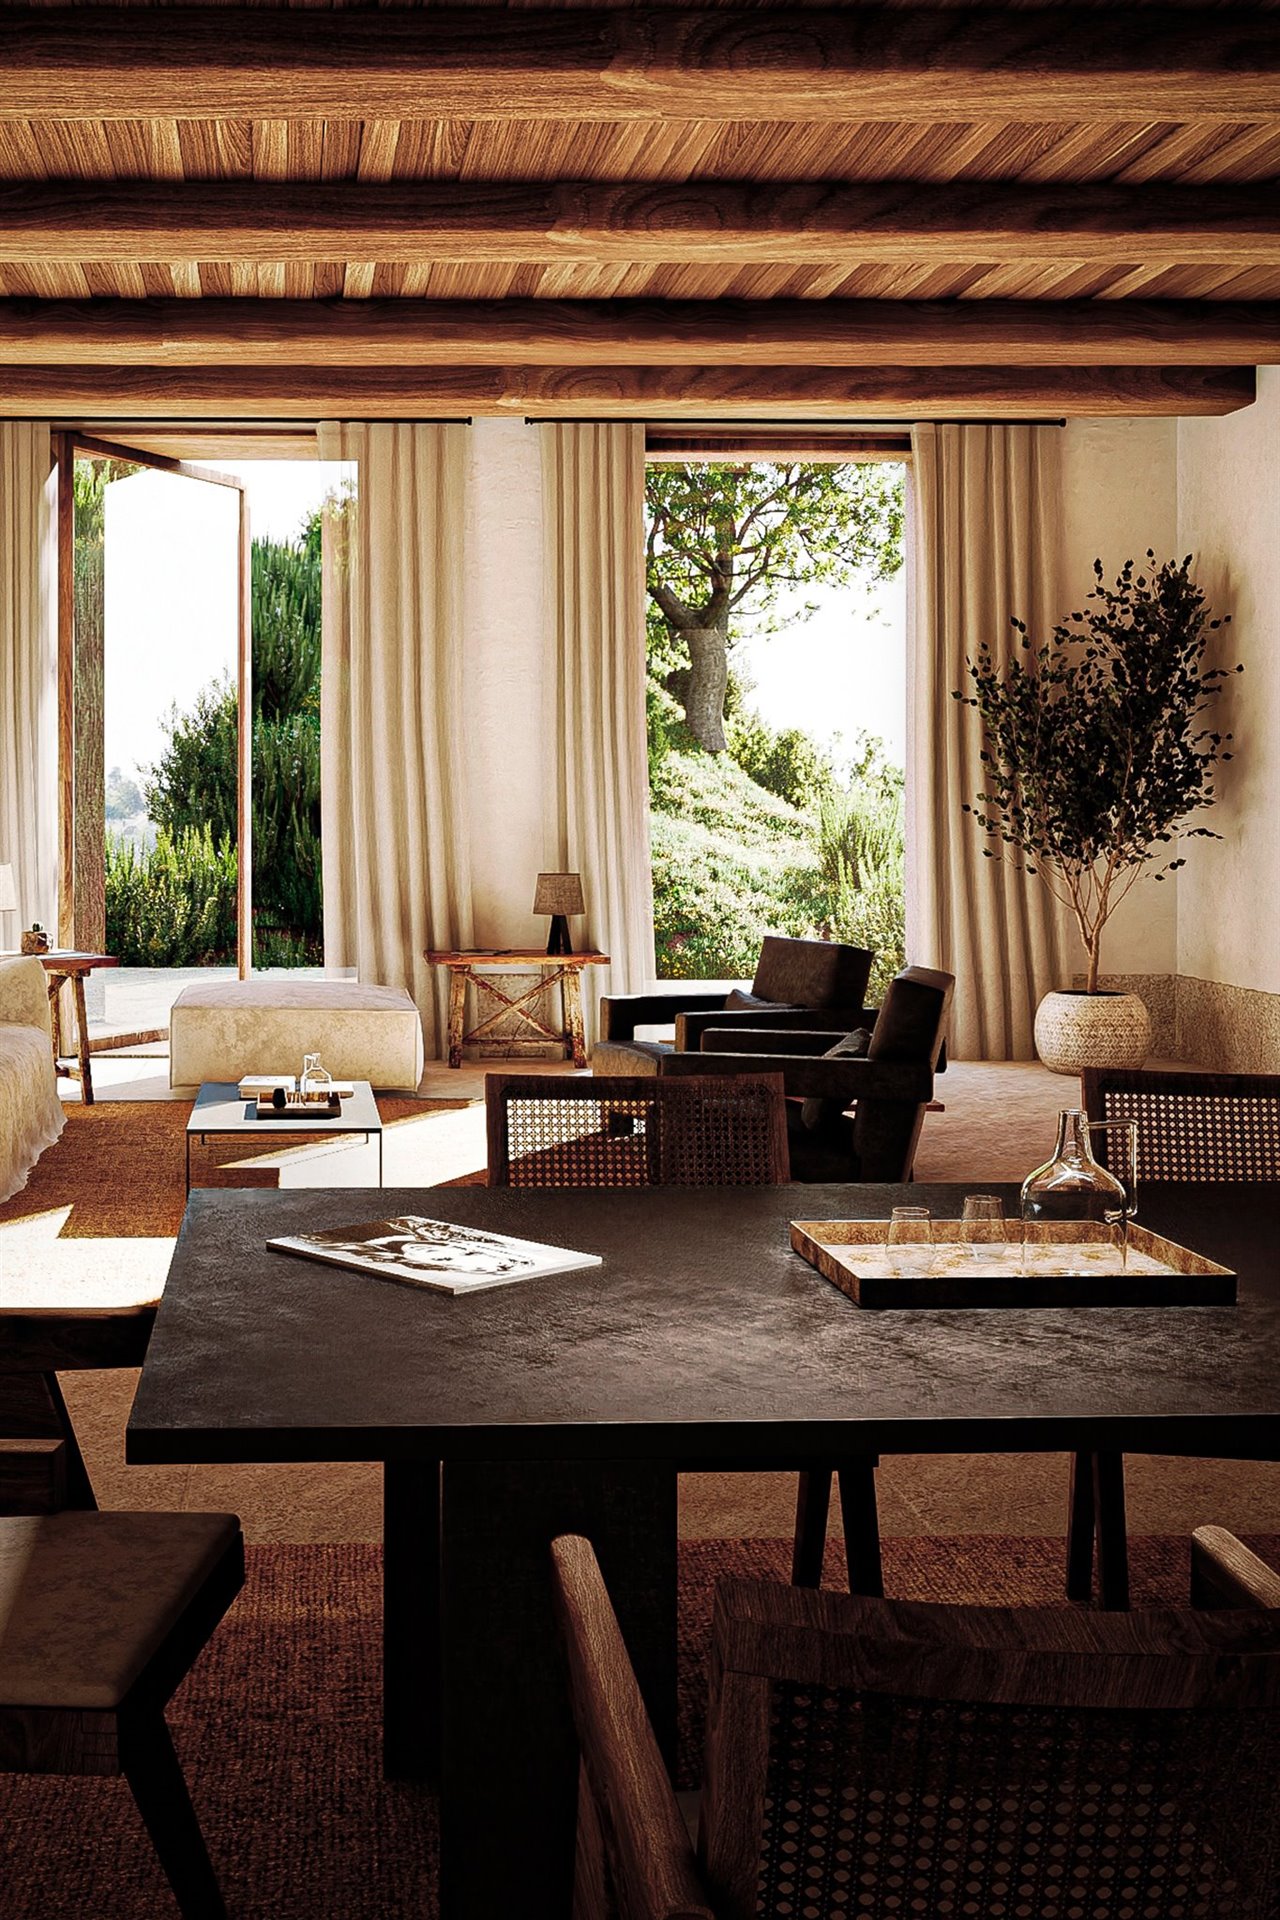 En esta estancia común de MRGO, los arquitectos han dividido el comedor y el salón utilizando alfombras a modo de separadores visuales, tal y como aconsejan desde Burondo.